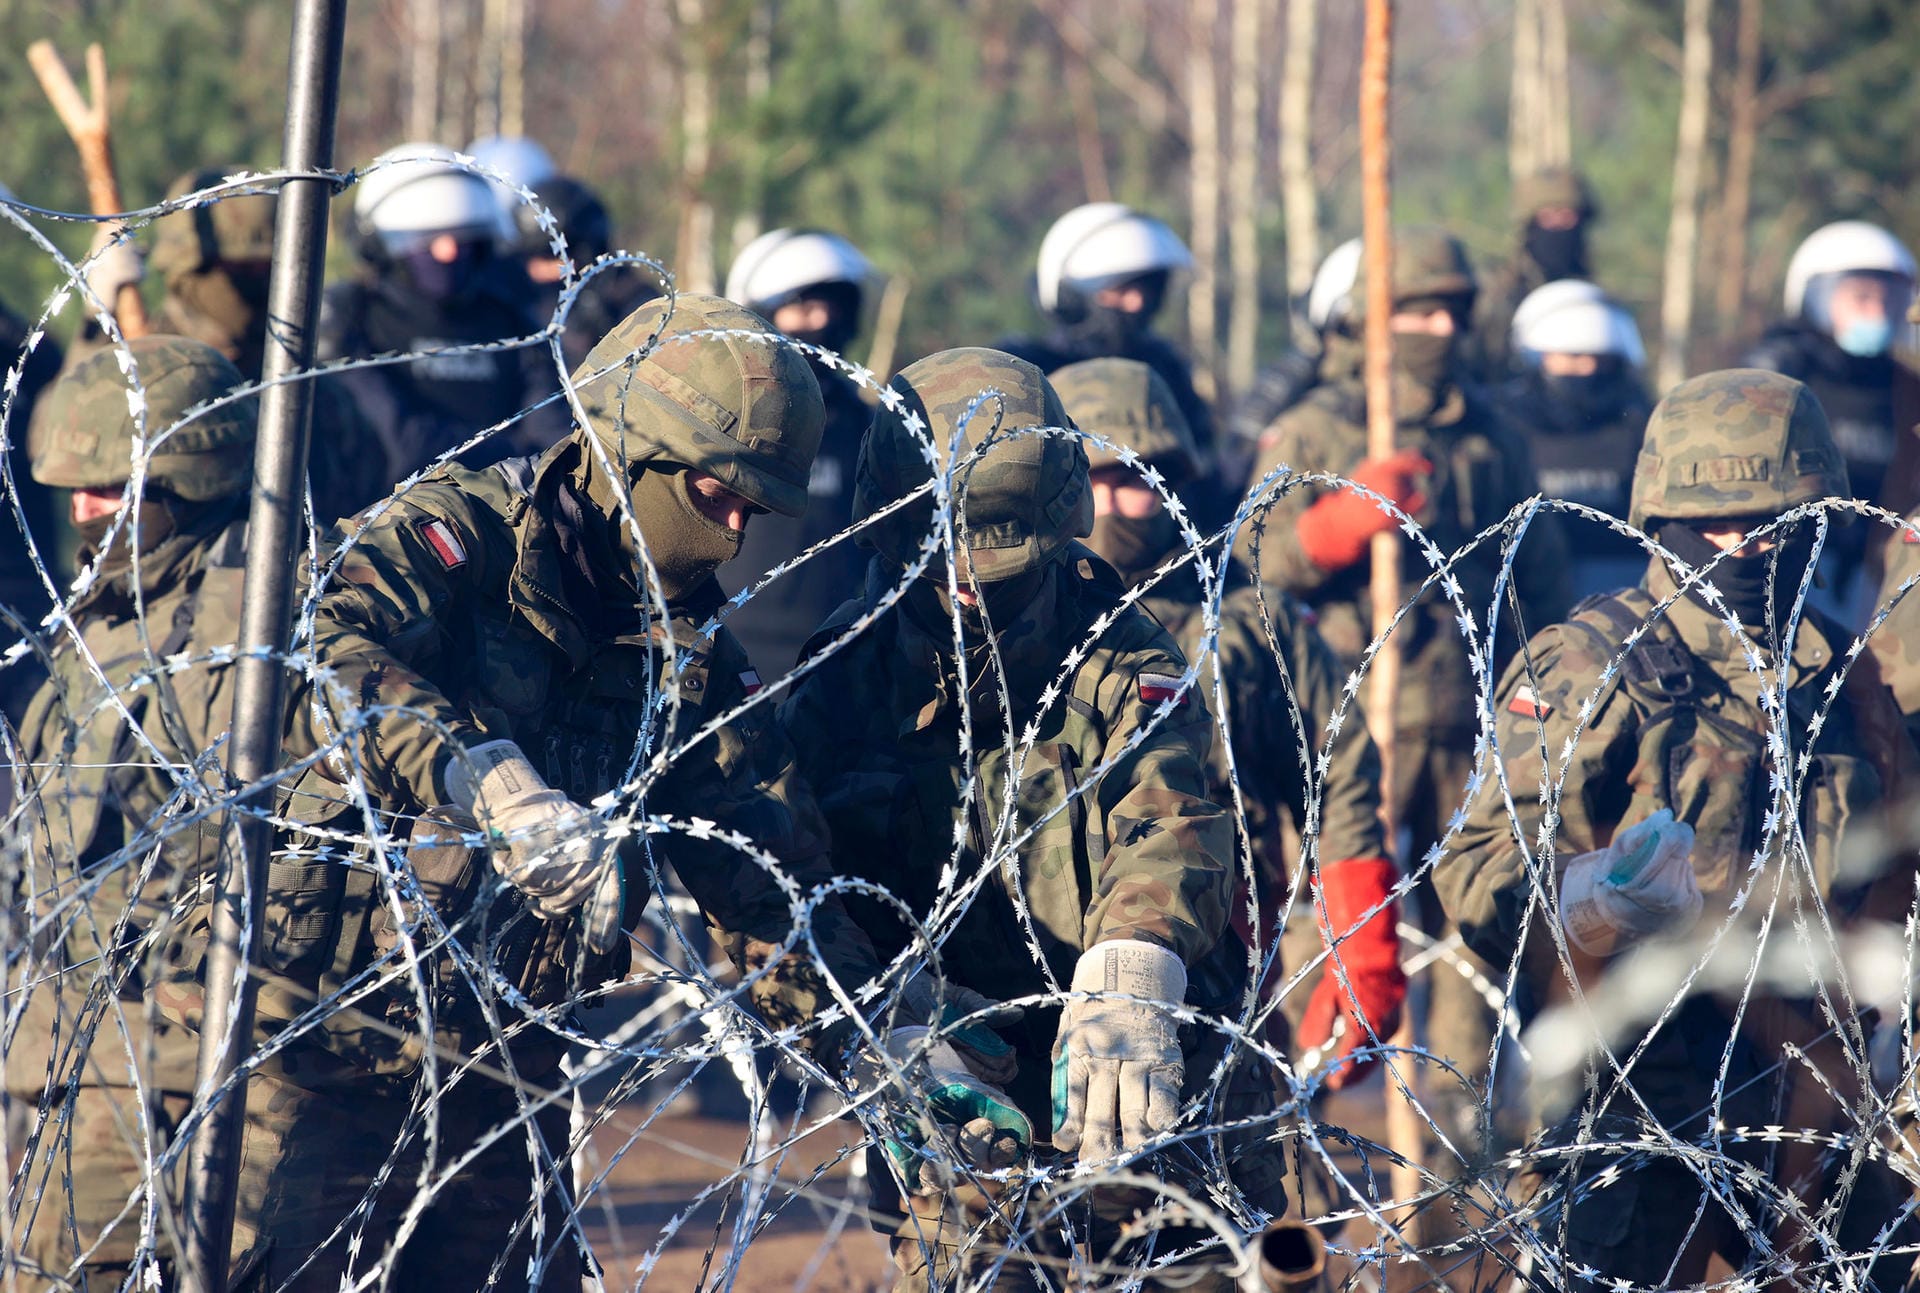 Polnische Polizisten und Soldaten stehen am Stacheldraht: Er soll den Grenzübertritt der Migranten verhindern.